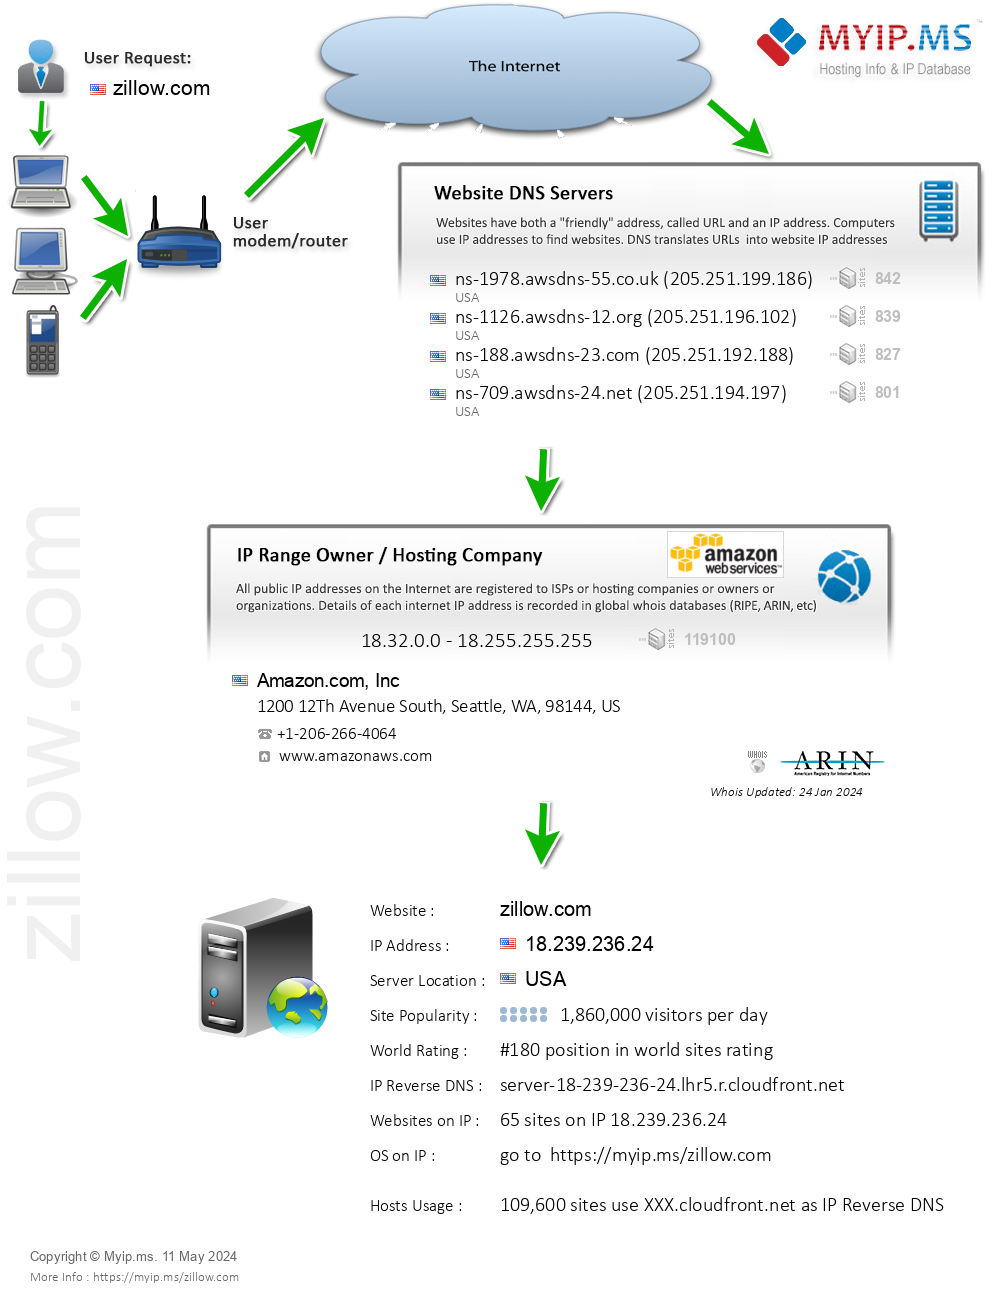 Zillow.com - Website Hosting Visual IP Diagram